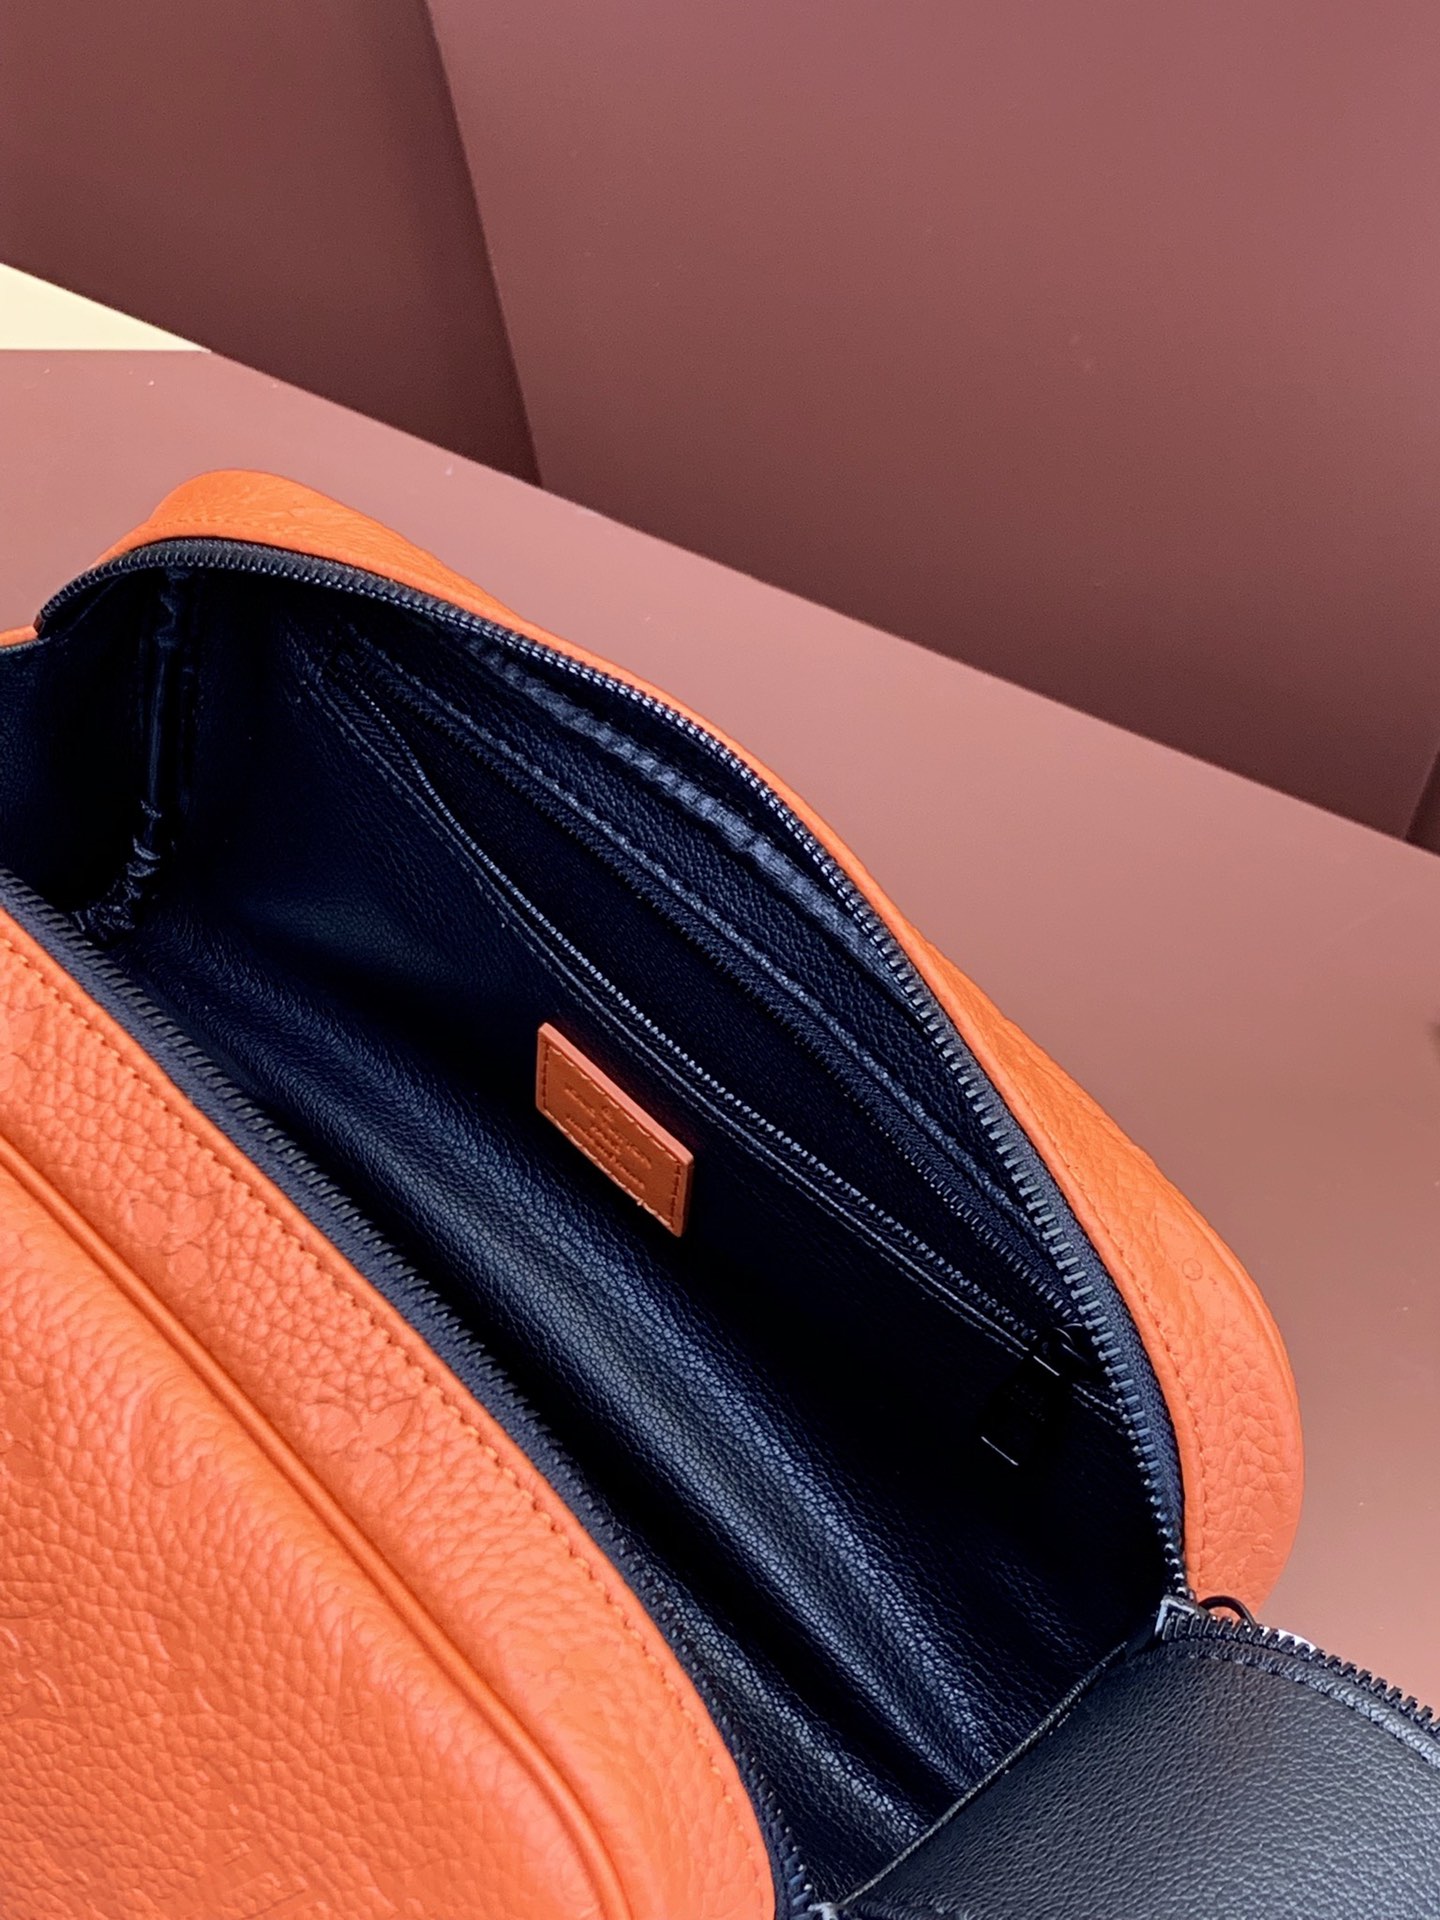 ヴィトン バッグ 色移り激安通販 型番M82576 洗濯バッグ 旅行用 トラベルポーチ 便利 オレンジ色_5